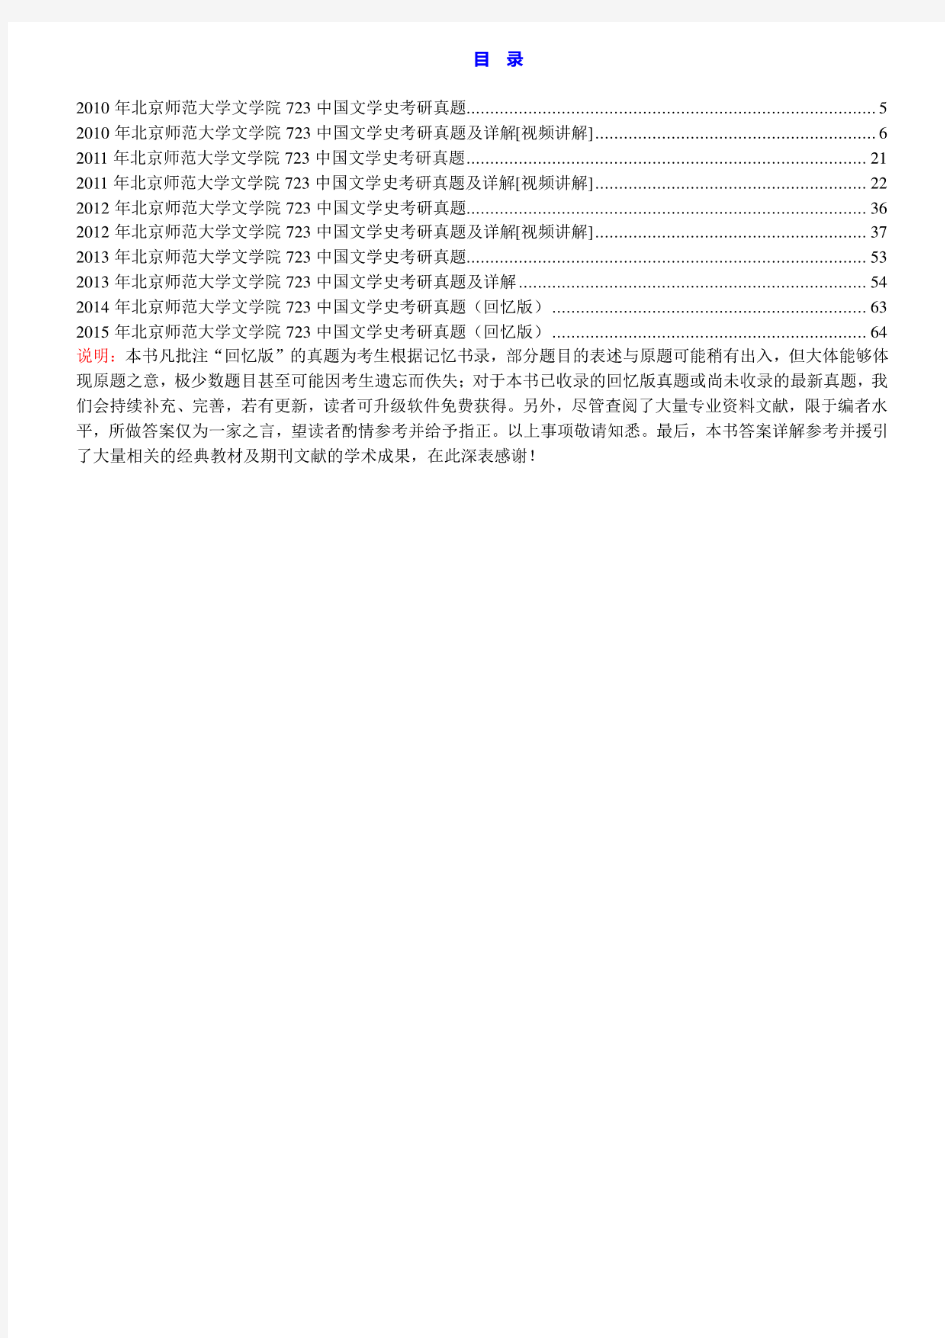 北京师范大学723中国文学史10-15年(14-15年回忆版)真题